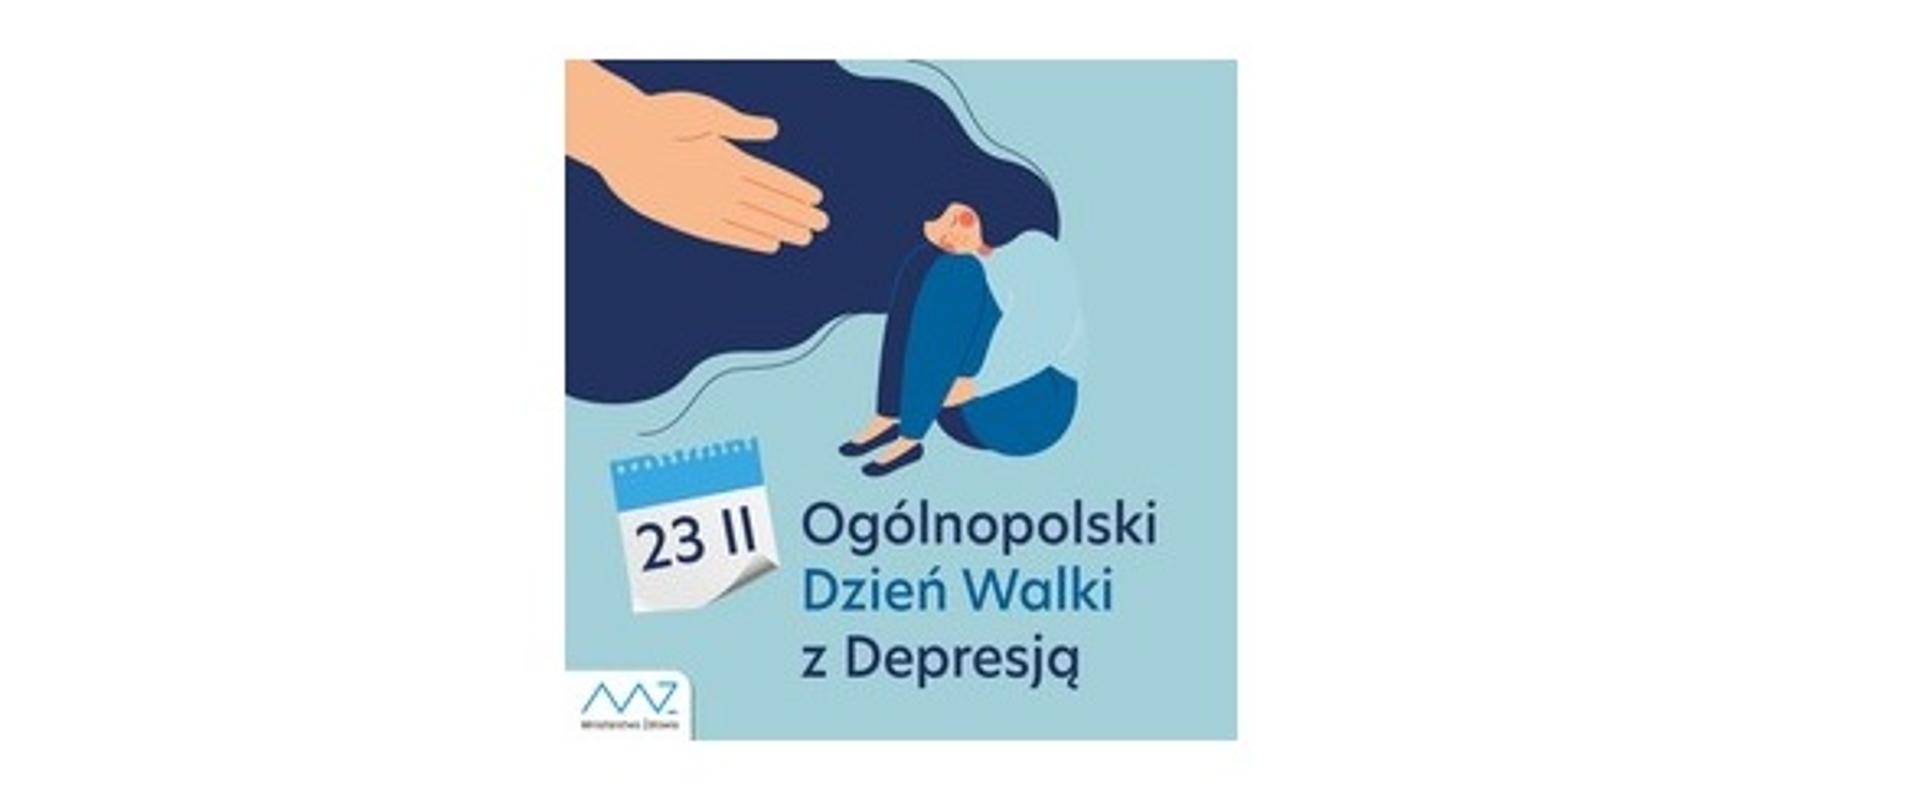 Plakat okolicznościowy na Dzień Walki z Depresją. Na błękitnym tle widać siedzącą postać smutnej kobiety i wyciągnięta ku niej dłoń. Na dole plakatu znajduje się data 23 lutego i napis Dzień Walki z Depresją